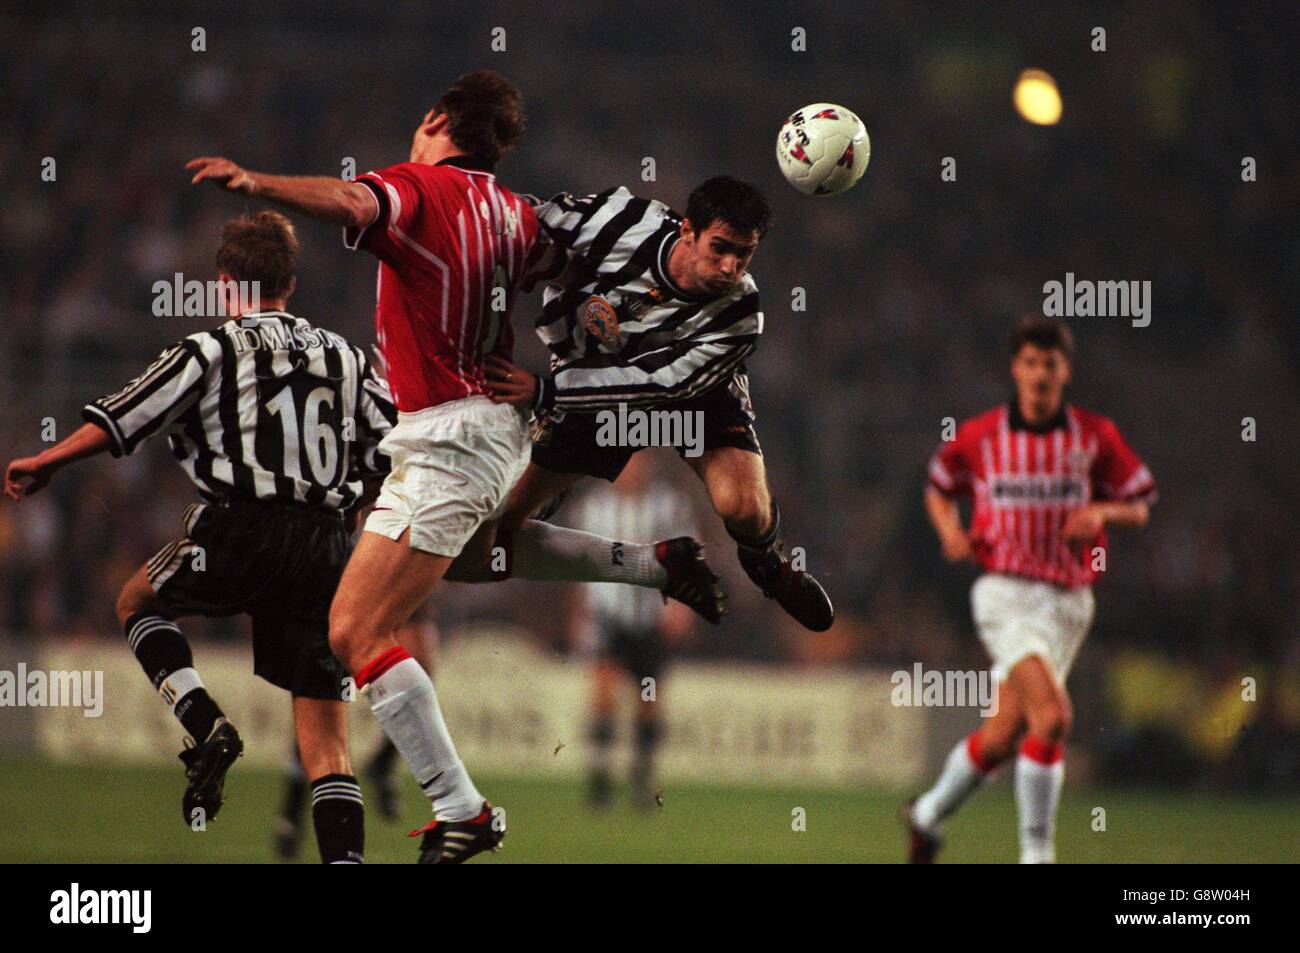 Jaap Stam von PSV Eindhoven (zweite links) Versucht Keith Gillespie von Newcastle United (rechts) von zu stoppen Ziel erreicht Stockfoto